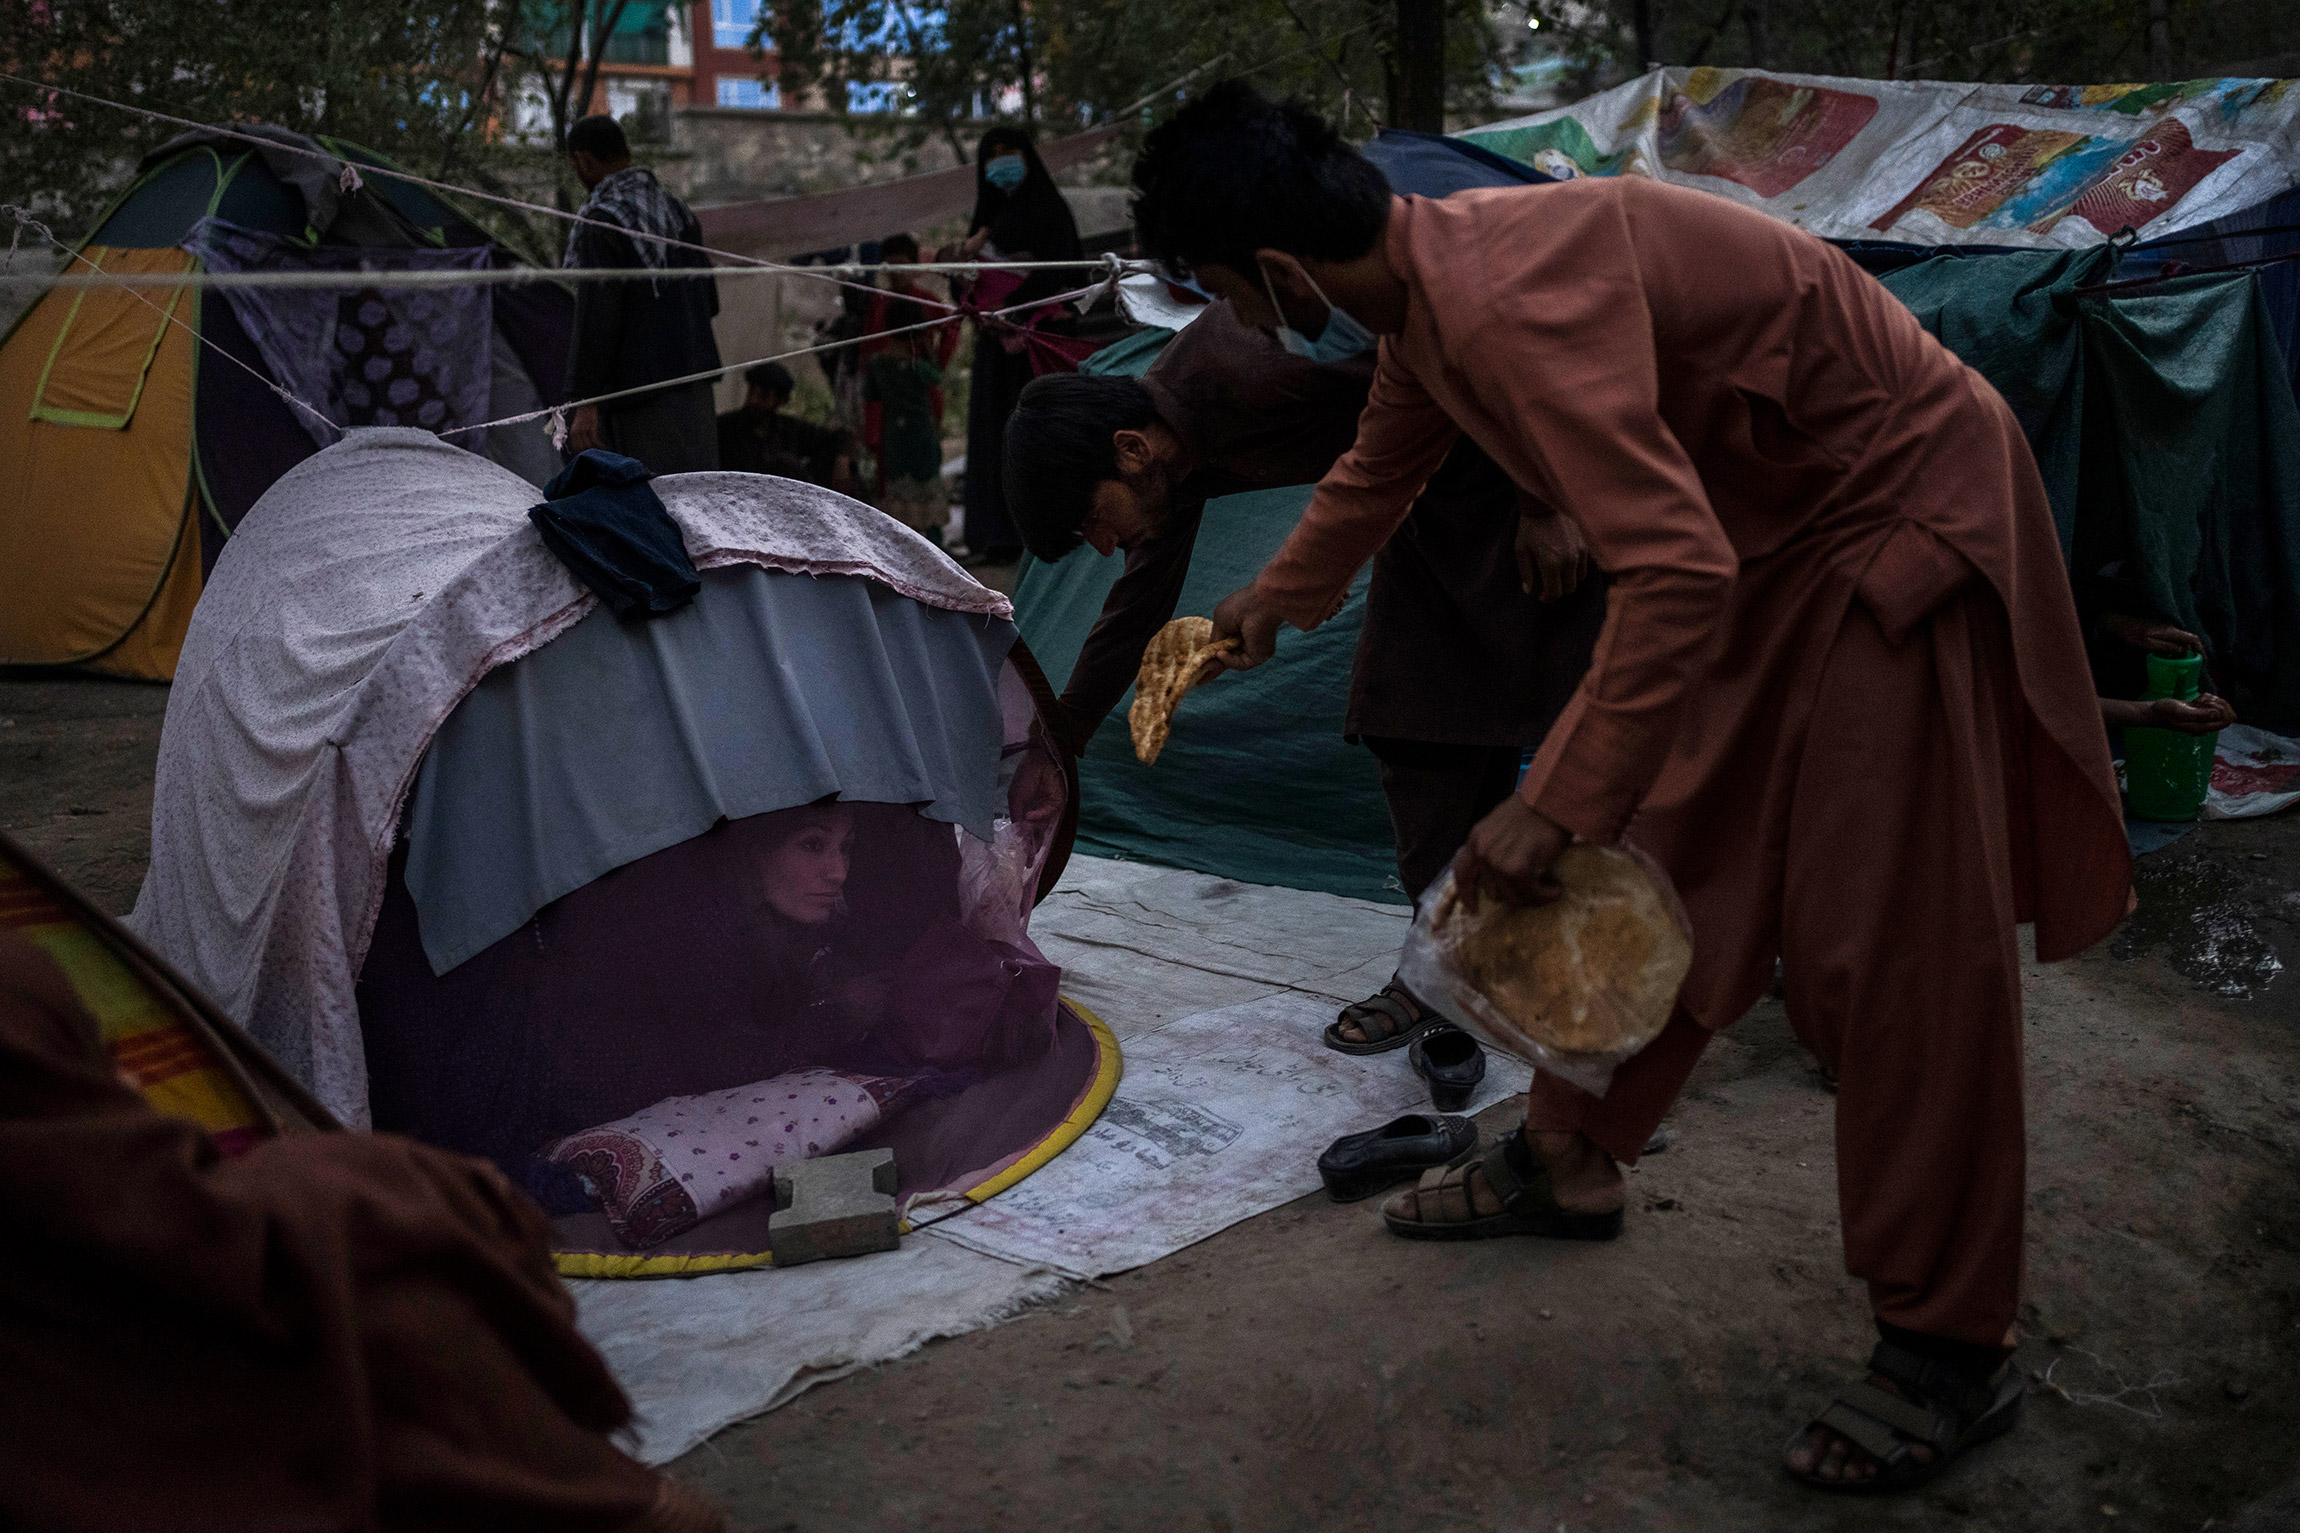 На фото:  в лагере внутренних переселенцев в Кабуле раздают продукты питания

После того, как &laquo;Талибан&raquo; взял Афганистан под контроль, свои дома покинули тысячи человек, и, по данным ООН, количество внутренних переселенцев в стране выросло до 550 тыс. человек. С июля все больше афганцев приезжают в Кабул и другие крупные города, большинство переселенцев из города Газни и провинции Логар, сообщала организация. В лагерях внутренних переселенцев несколько человек могут проживать в одной палатке, собранной из листов пластика. Доступ к питьевой воде там затруднен, людям также сложно соблюдать гигиену. С начала пандемии COVID-19 в Афганистане зарегистрировали 155 тыс. зараженных коронавирусом, 7,2 тыс. смертей от заболевания, но в реальности эти числа могут быть больше из-за больных в лагерях внутренних переселенцев, где нет возможности сделать тест